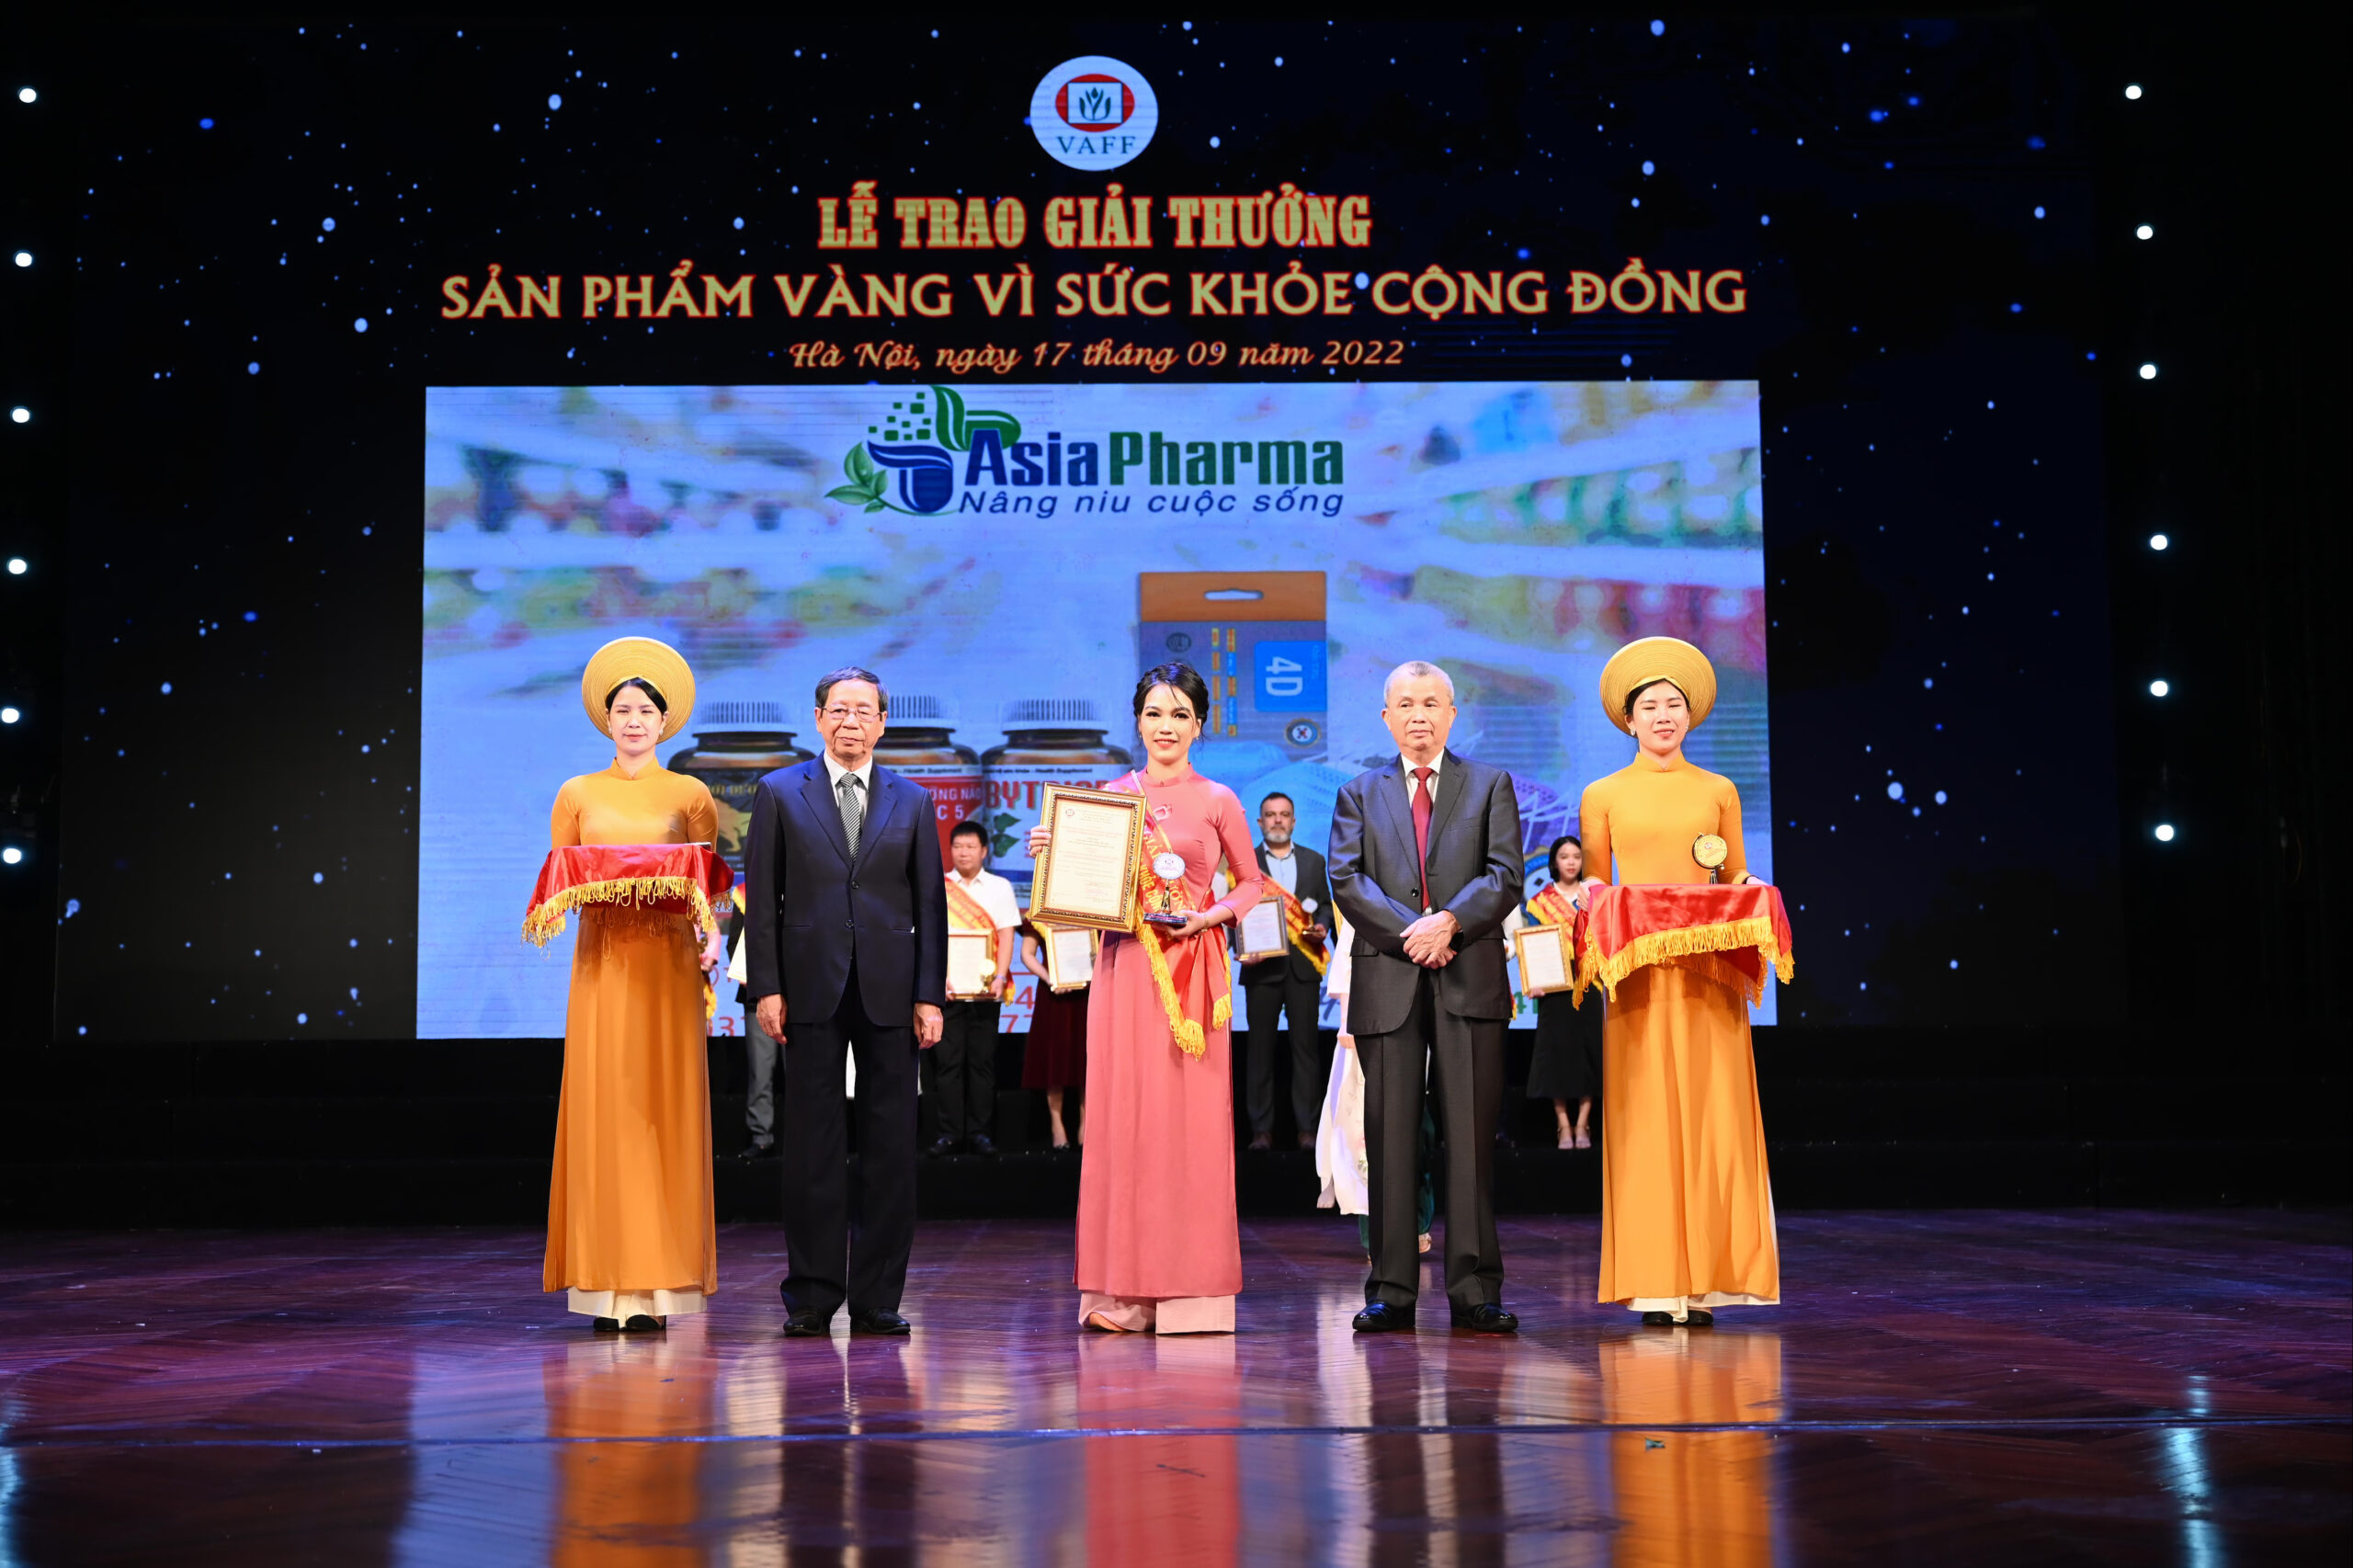 Asia Pharma nhận giải thưởng “Sản phẩm Vàng vì sức khỏe cộng đồng” năm 2022